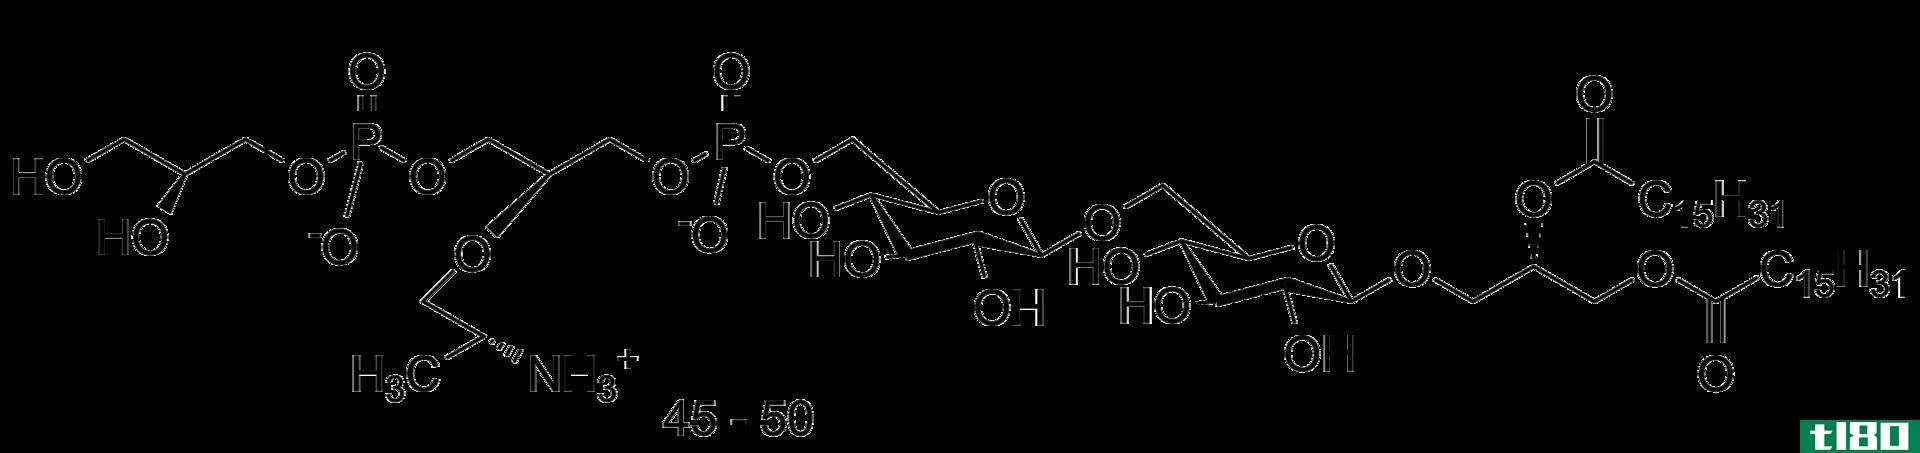 利比醇(ribitol)和甘油磷壁酸(glycerol teichoic acid)的区别